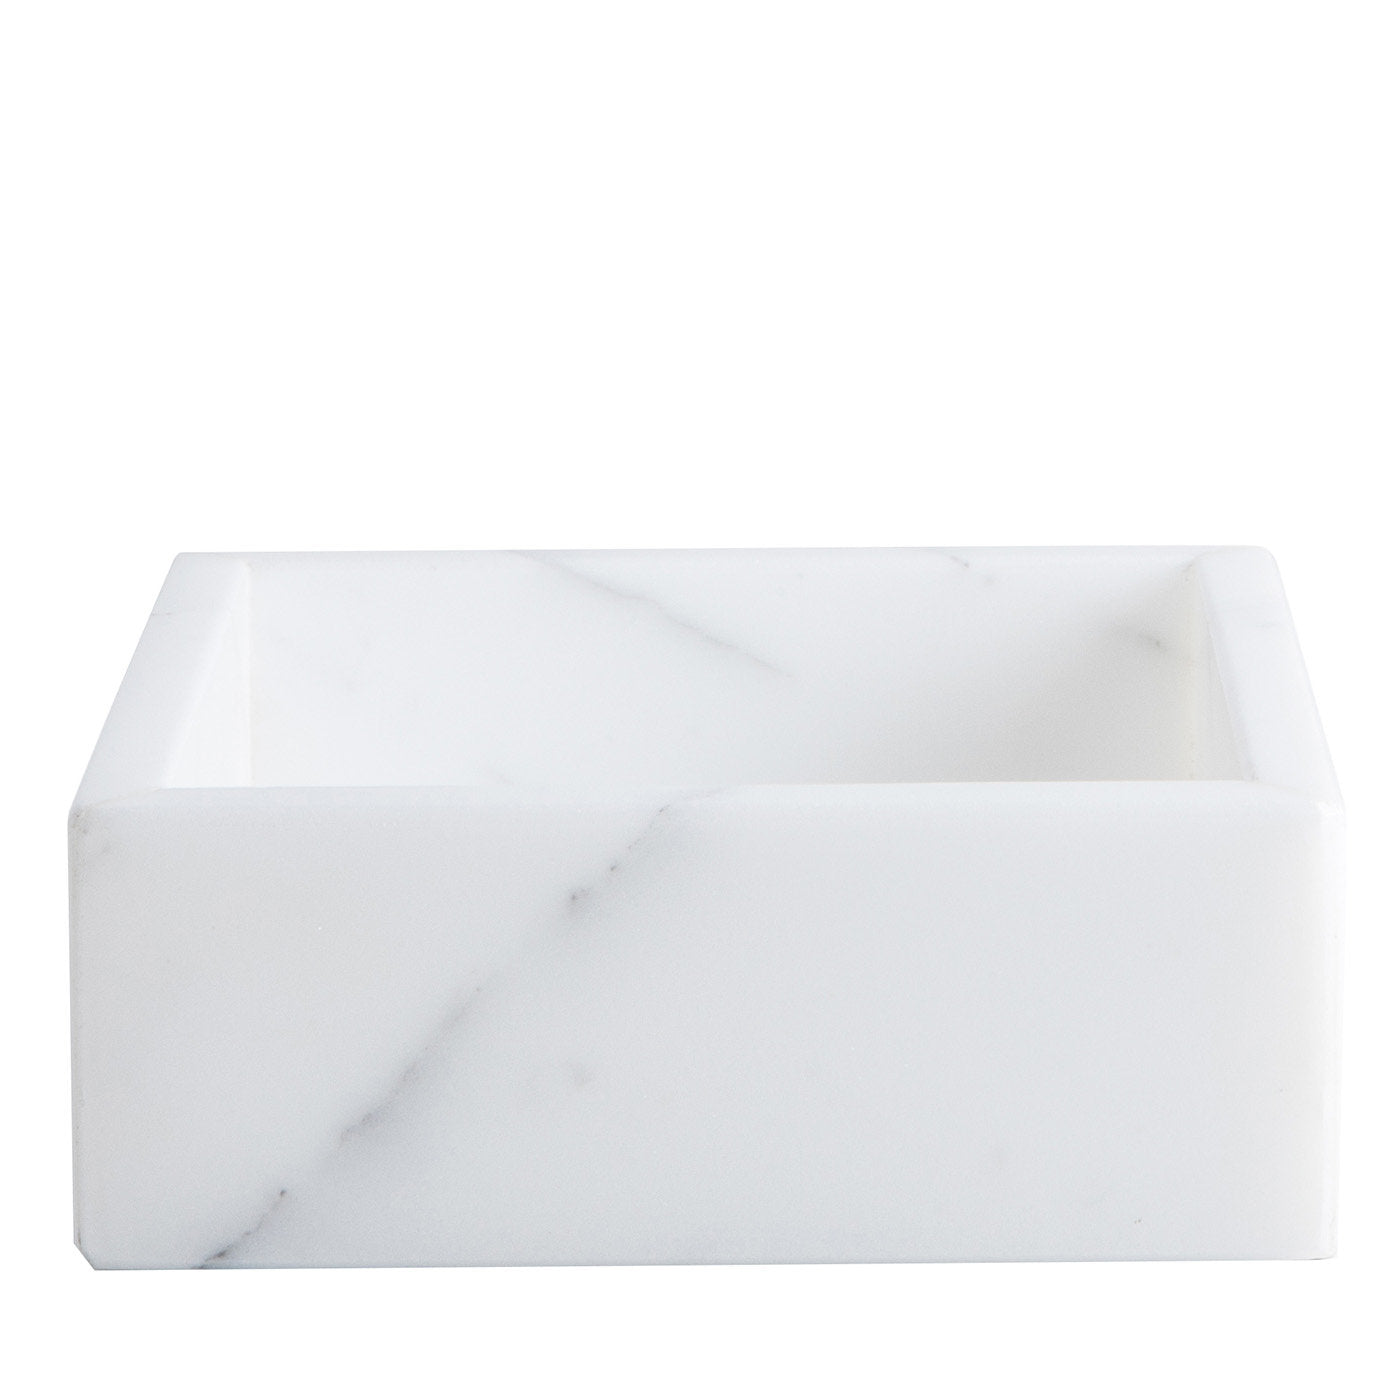 Toallero de invitados de mármol de Carrara blanco - Vista principal